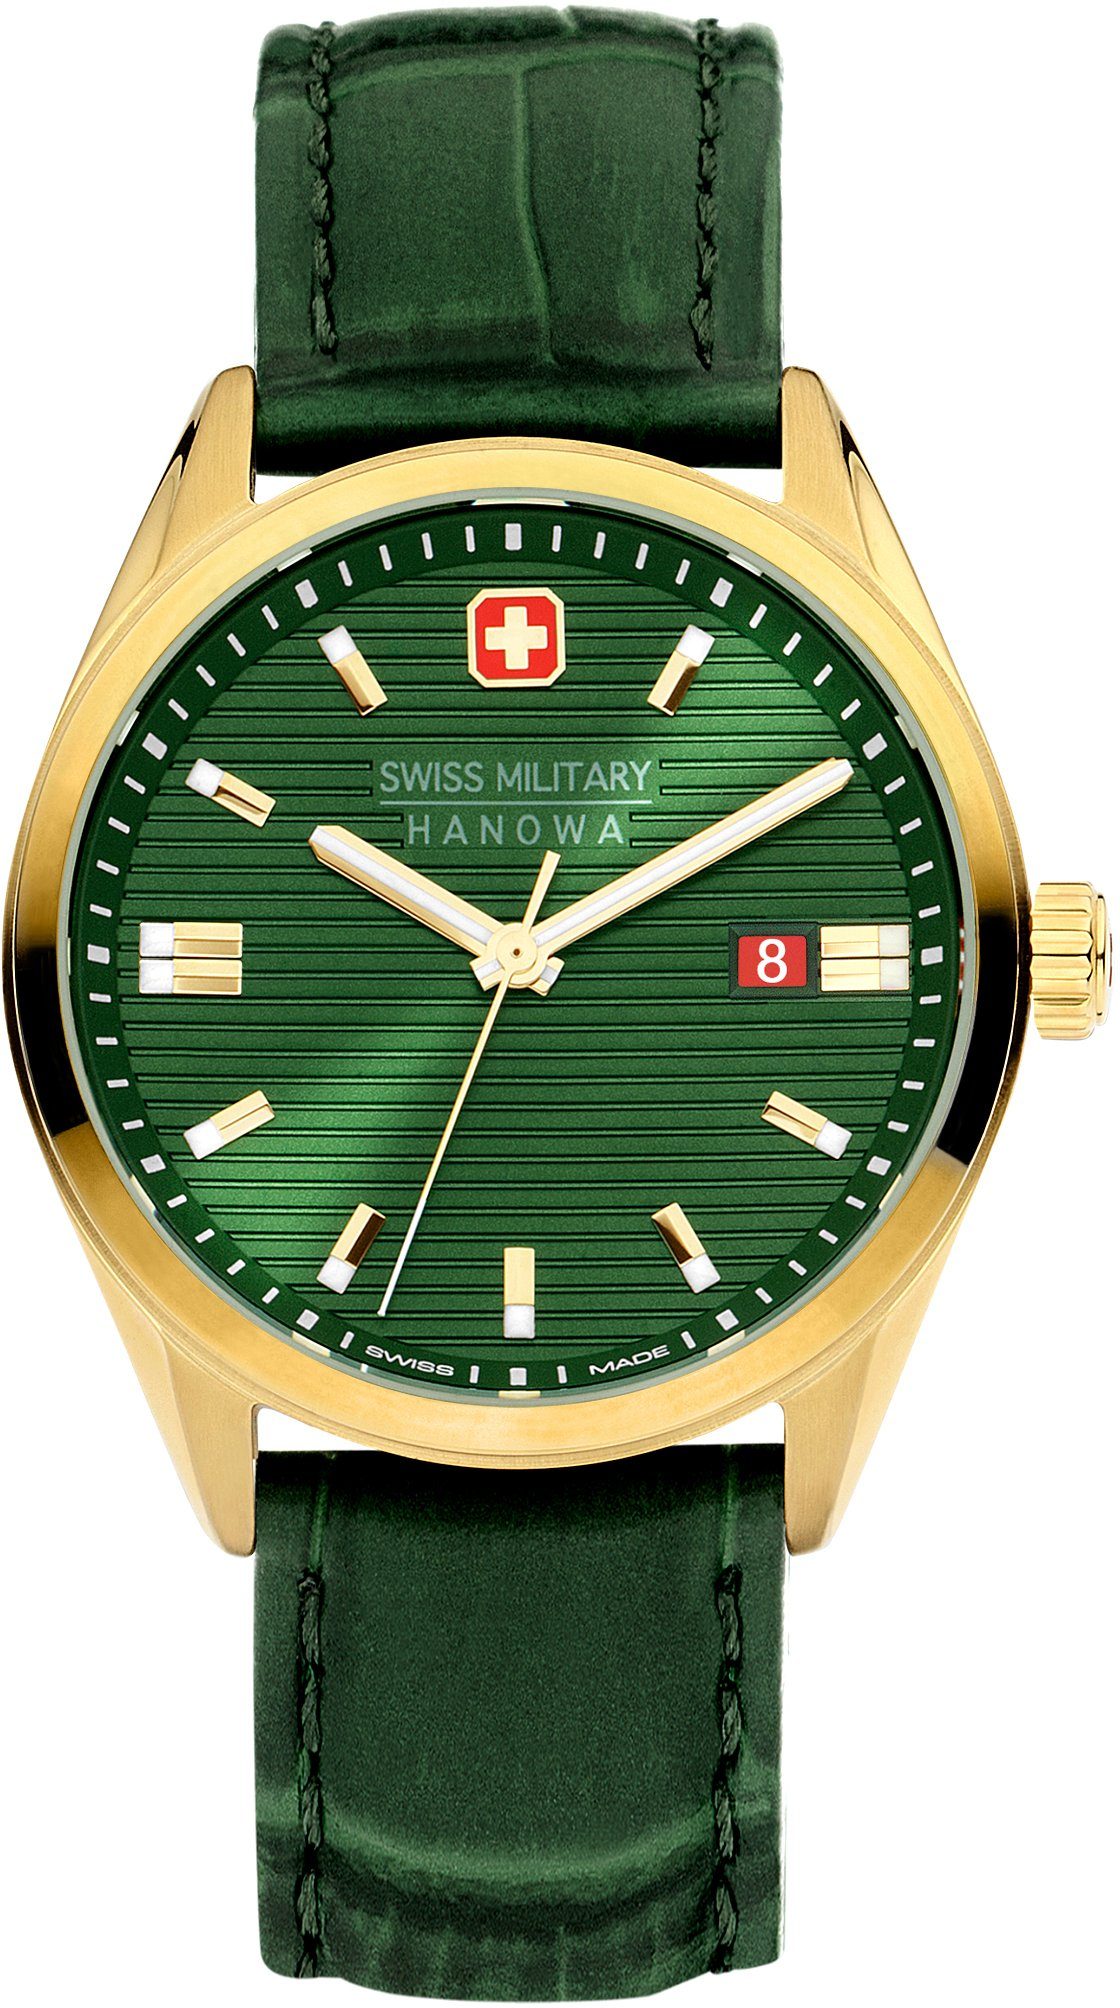 Uhr SMWGB2200111 Military Schweizer Hanowa Swiss ROADRUNNER, Grün